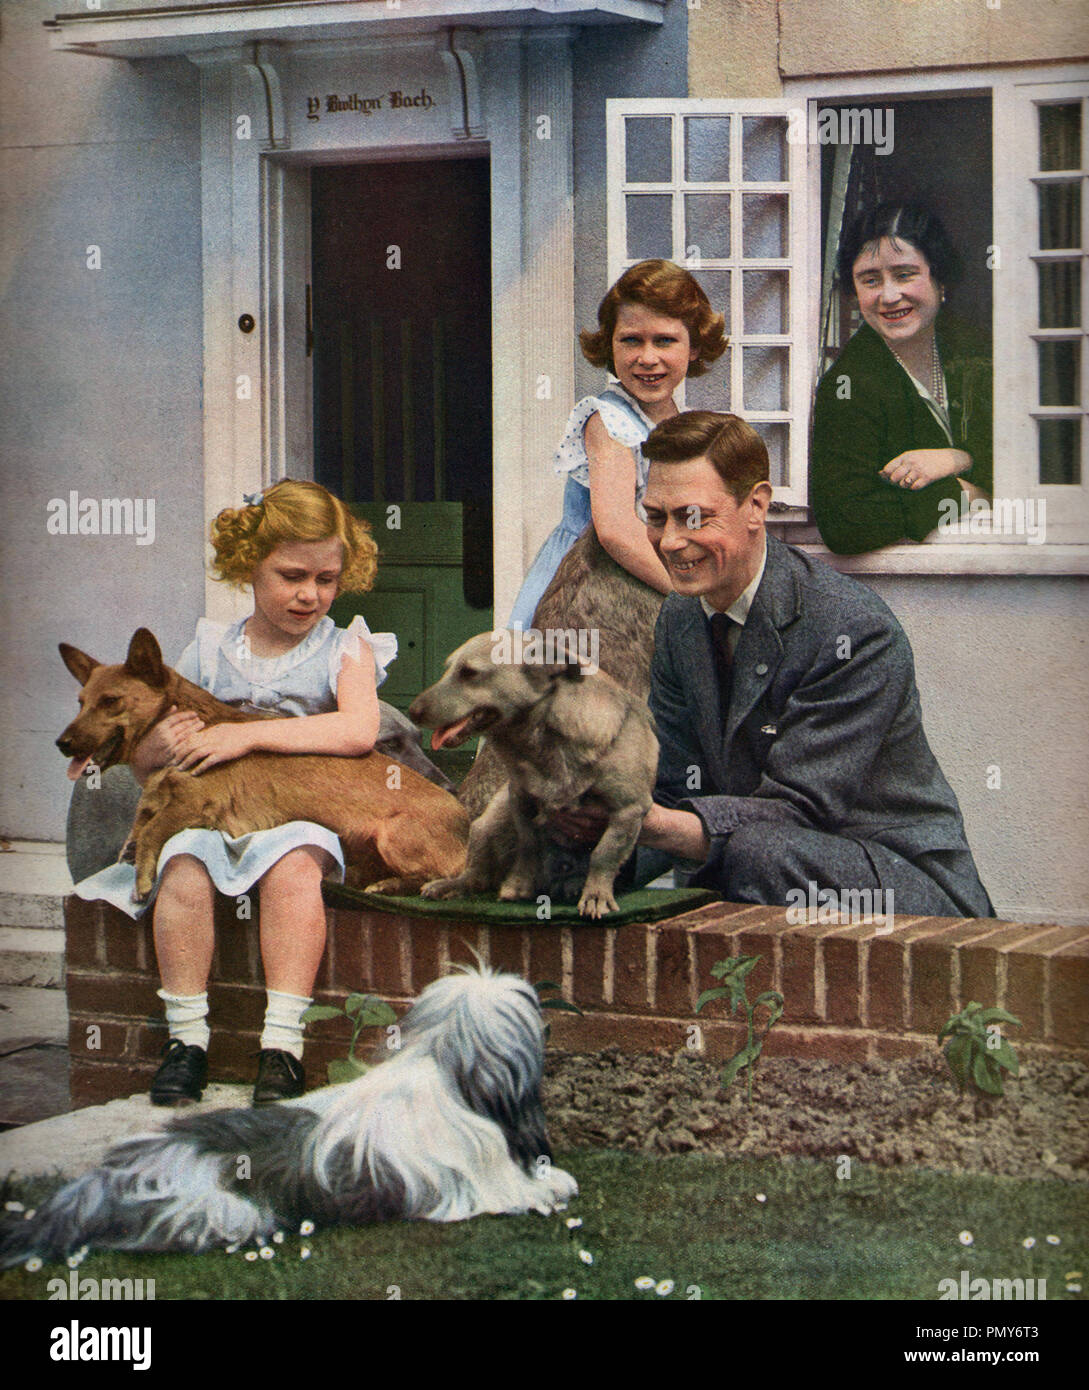 George die sechste mit seiner Frau Königin Elizabeth und ihre Töchter Prinzessin Elizabeth und Prinzessin Margaret bei Y Rhyd Y Bont Bach (das kleine Haus) im Jahr 1937, die von den Menschen in Wales zu Prinzessin Elizabeth begabt war. Stockfoto